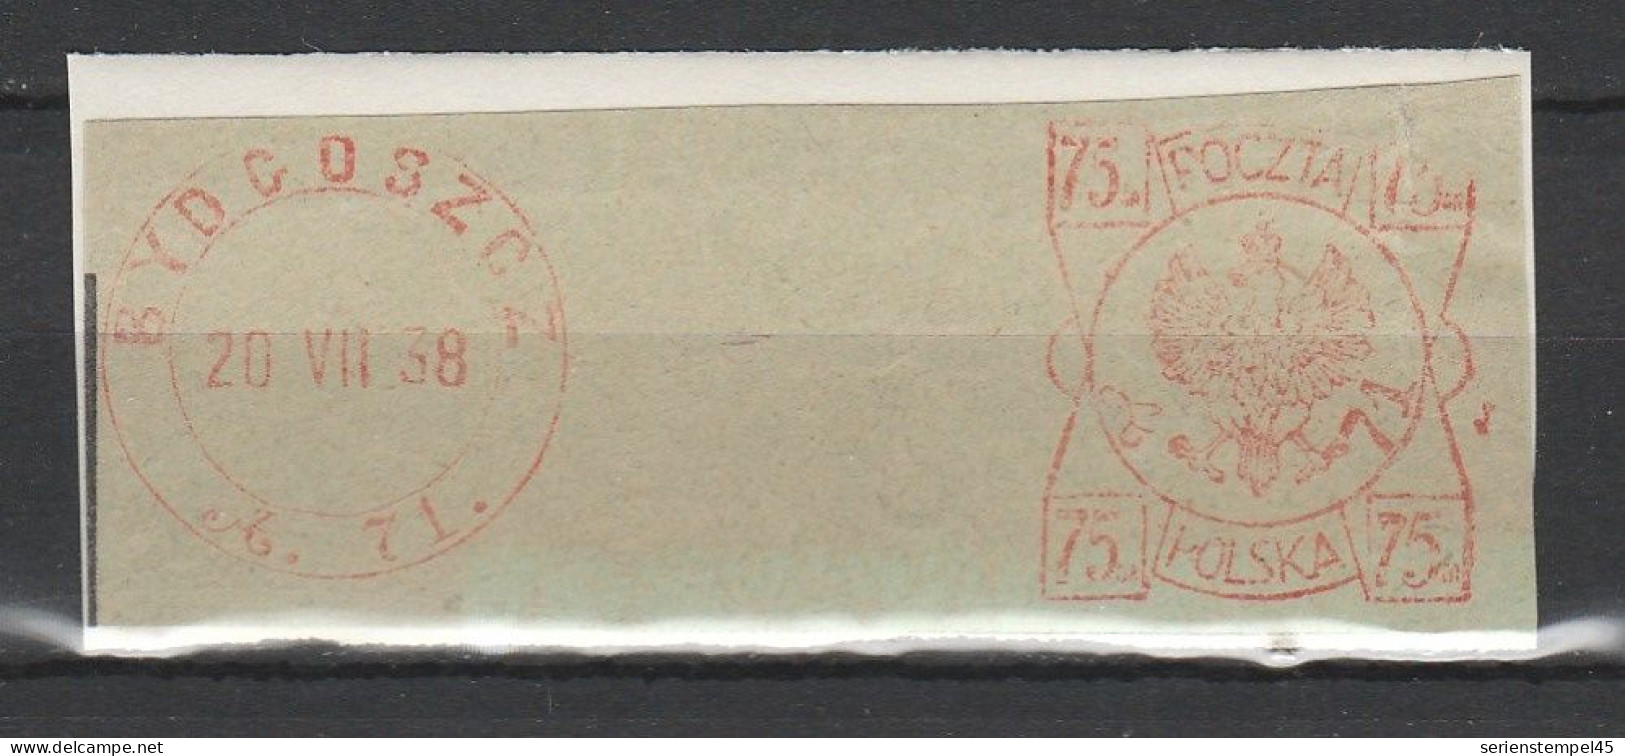 Polen Freistempel Briefstück Bydcoszcz 1938 Deutsch Bromberg - Máquinas Franqueo (EMA)